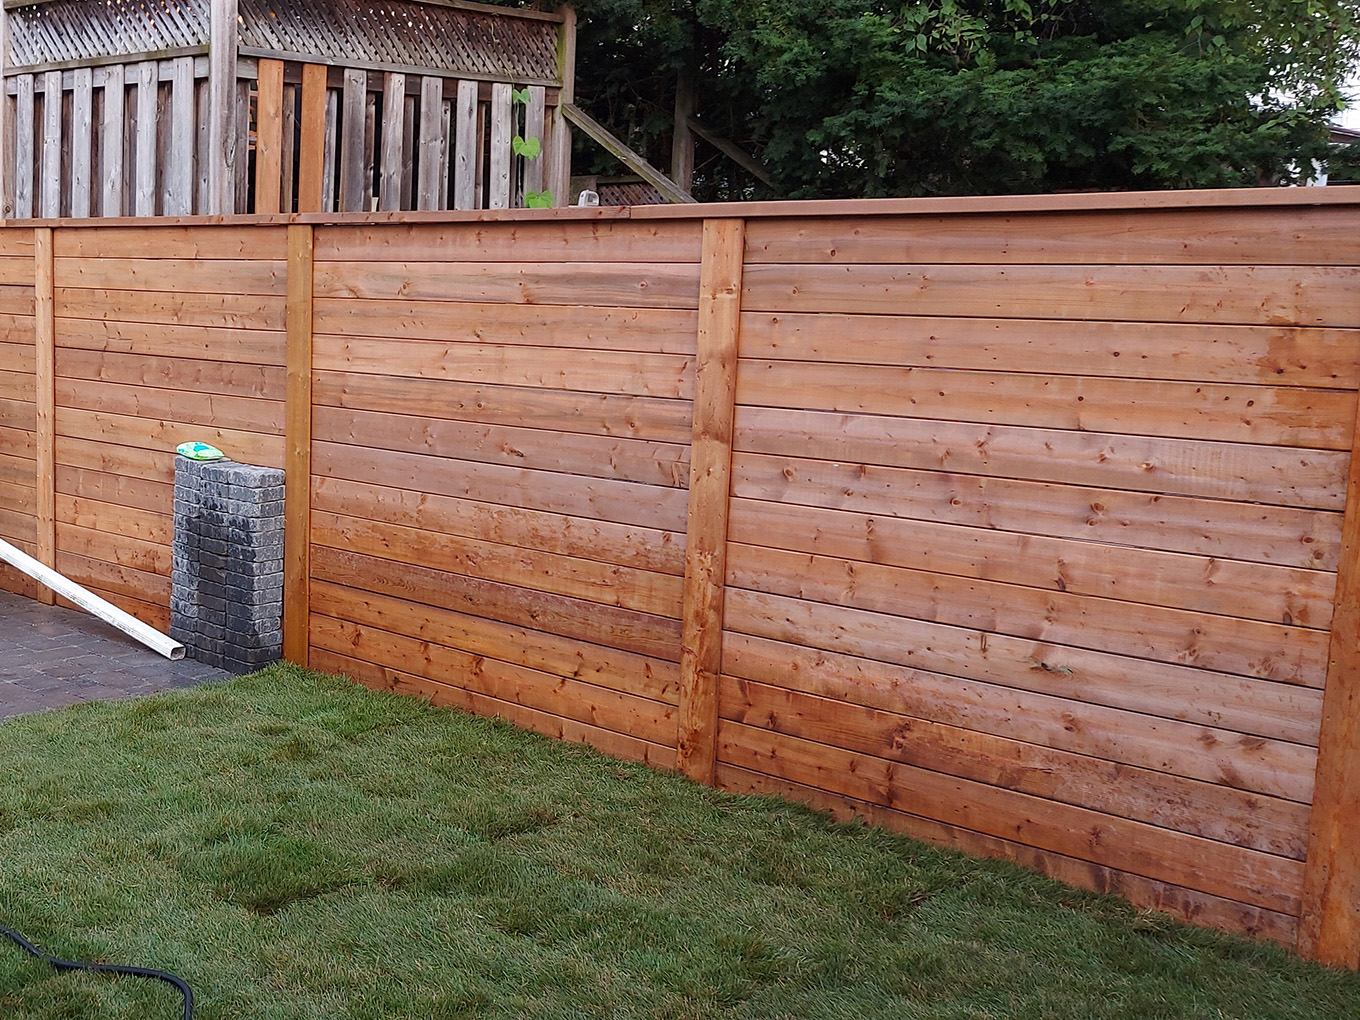 Etobicoke ON cap and trim style wood fence